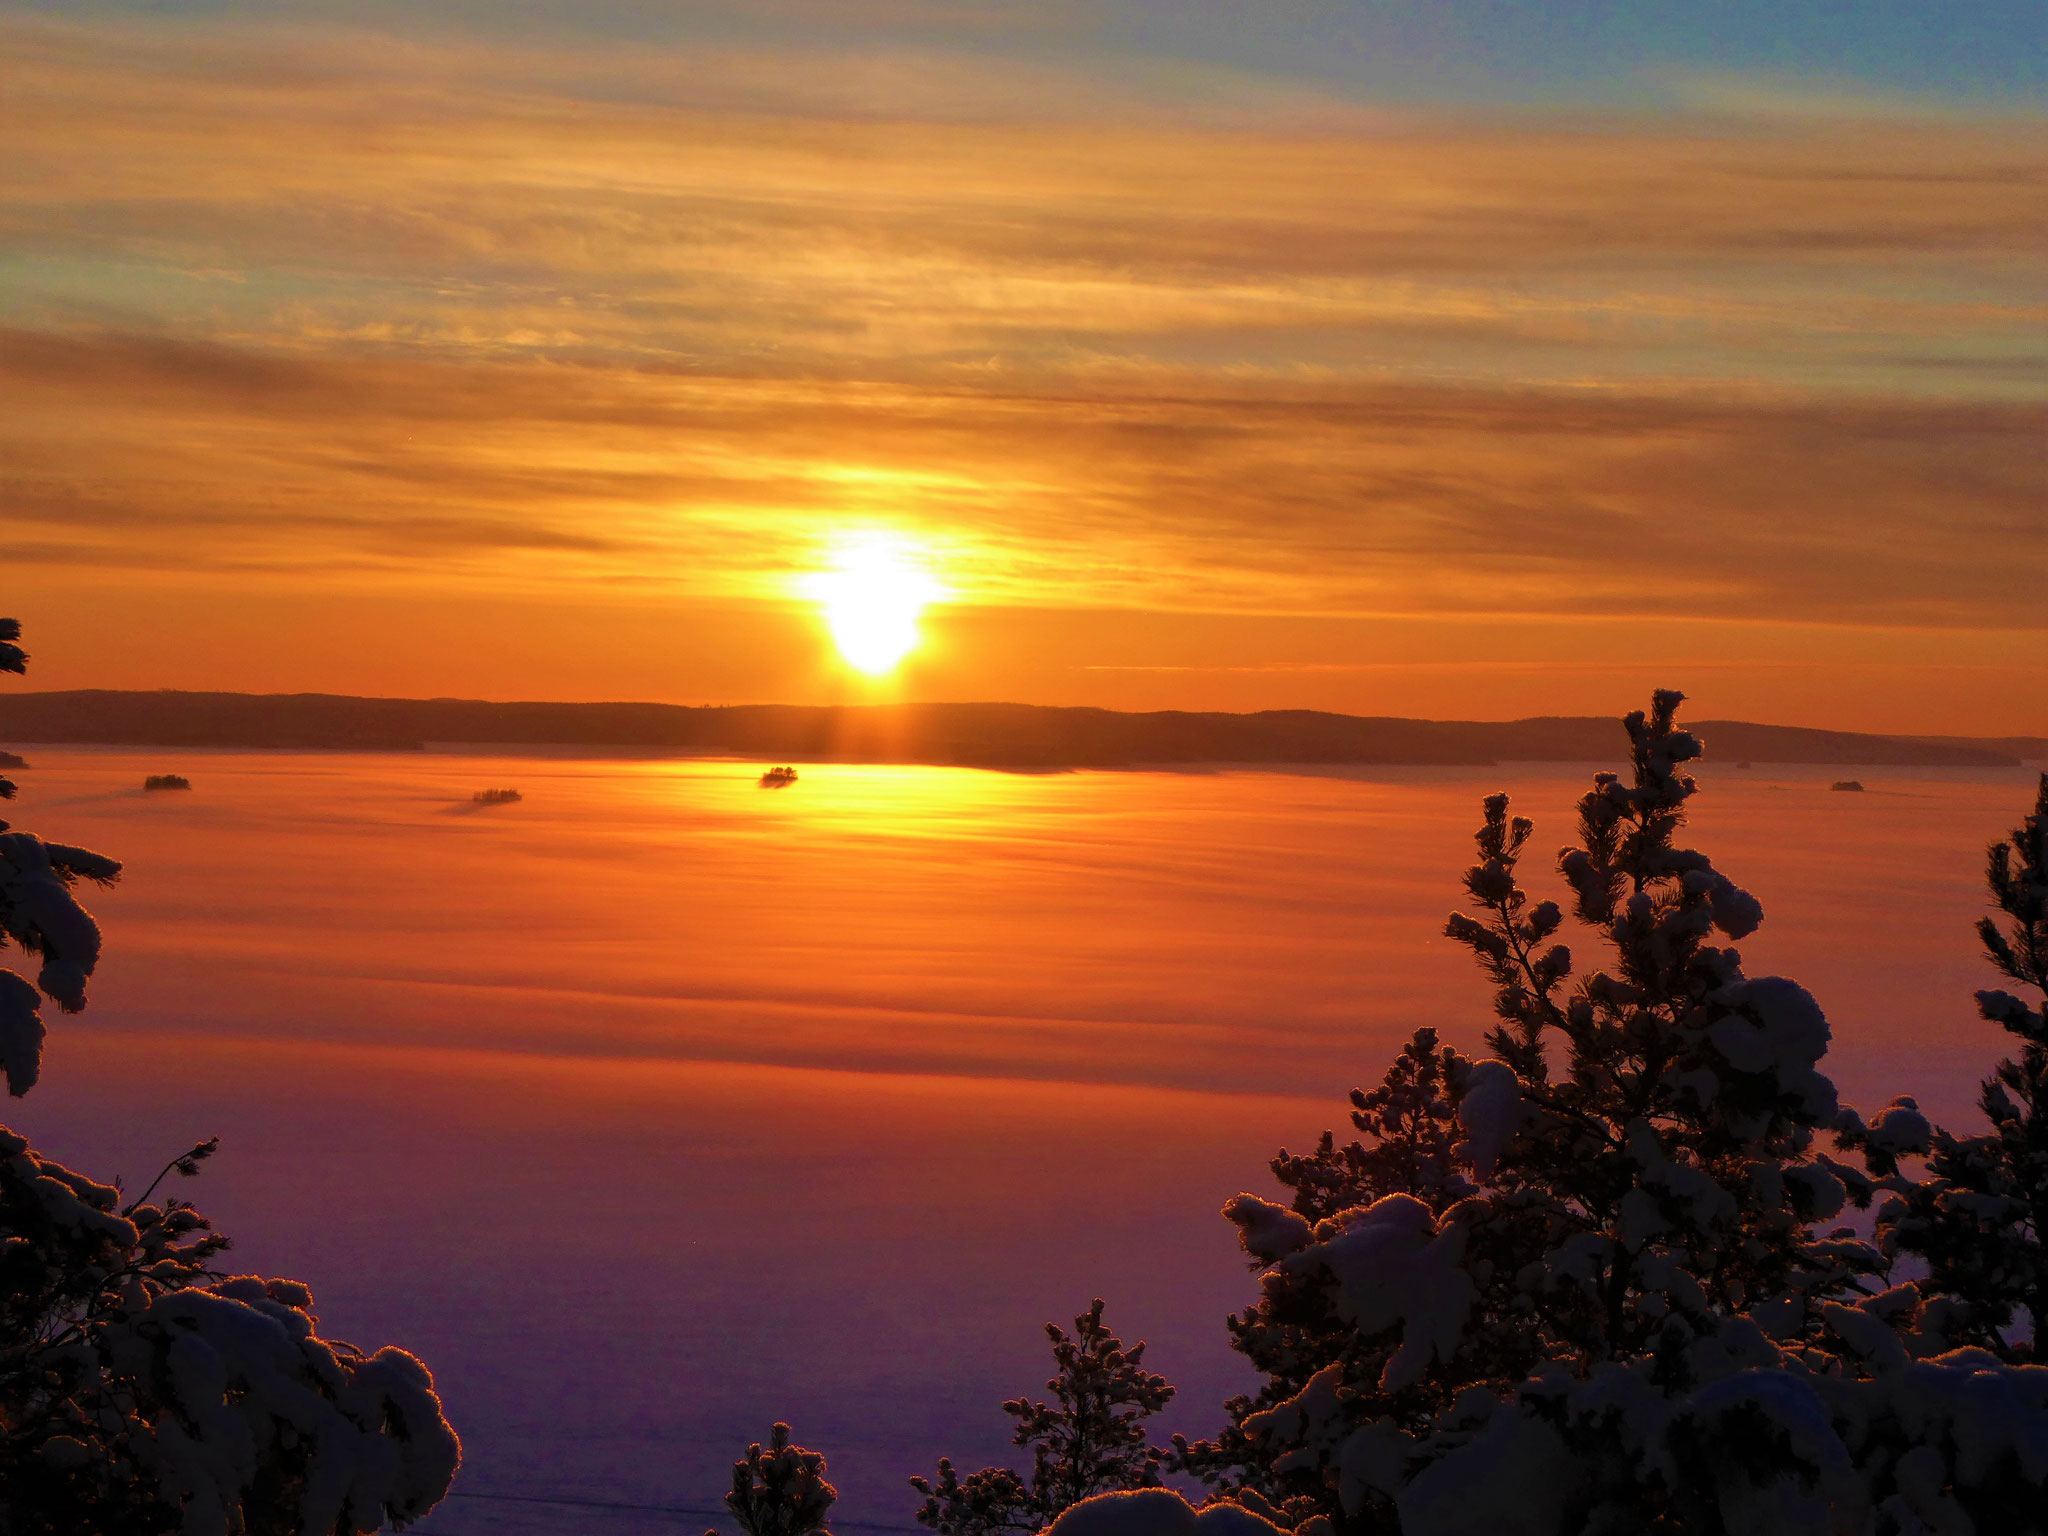 Sonnenuntergang über dem winterlichen Archipel vom nahen Aussichtsturm gesehen. Jetzt zurück in Ihr warmes Ferienhaus in die Sauna oder vor dem Kaminofen einkuscheln